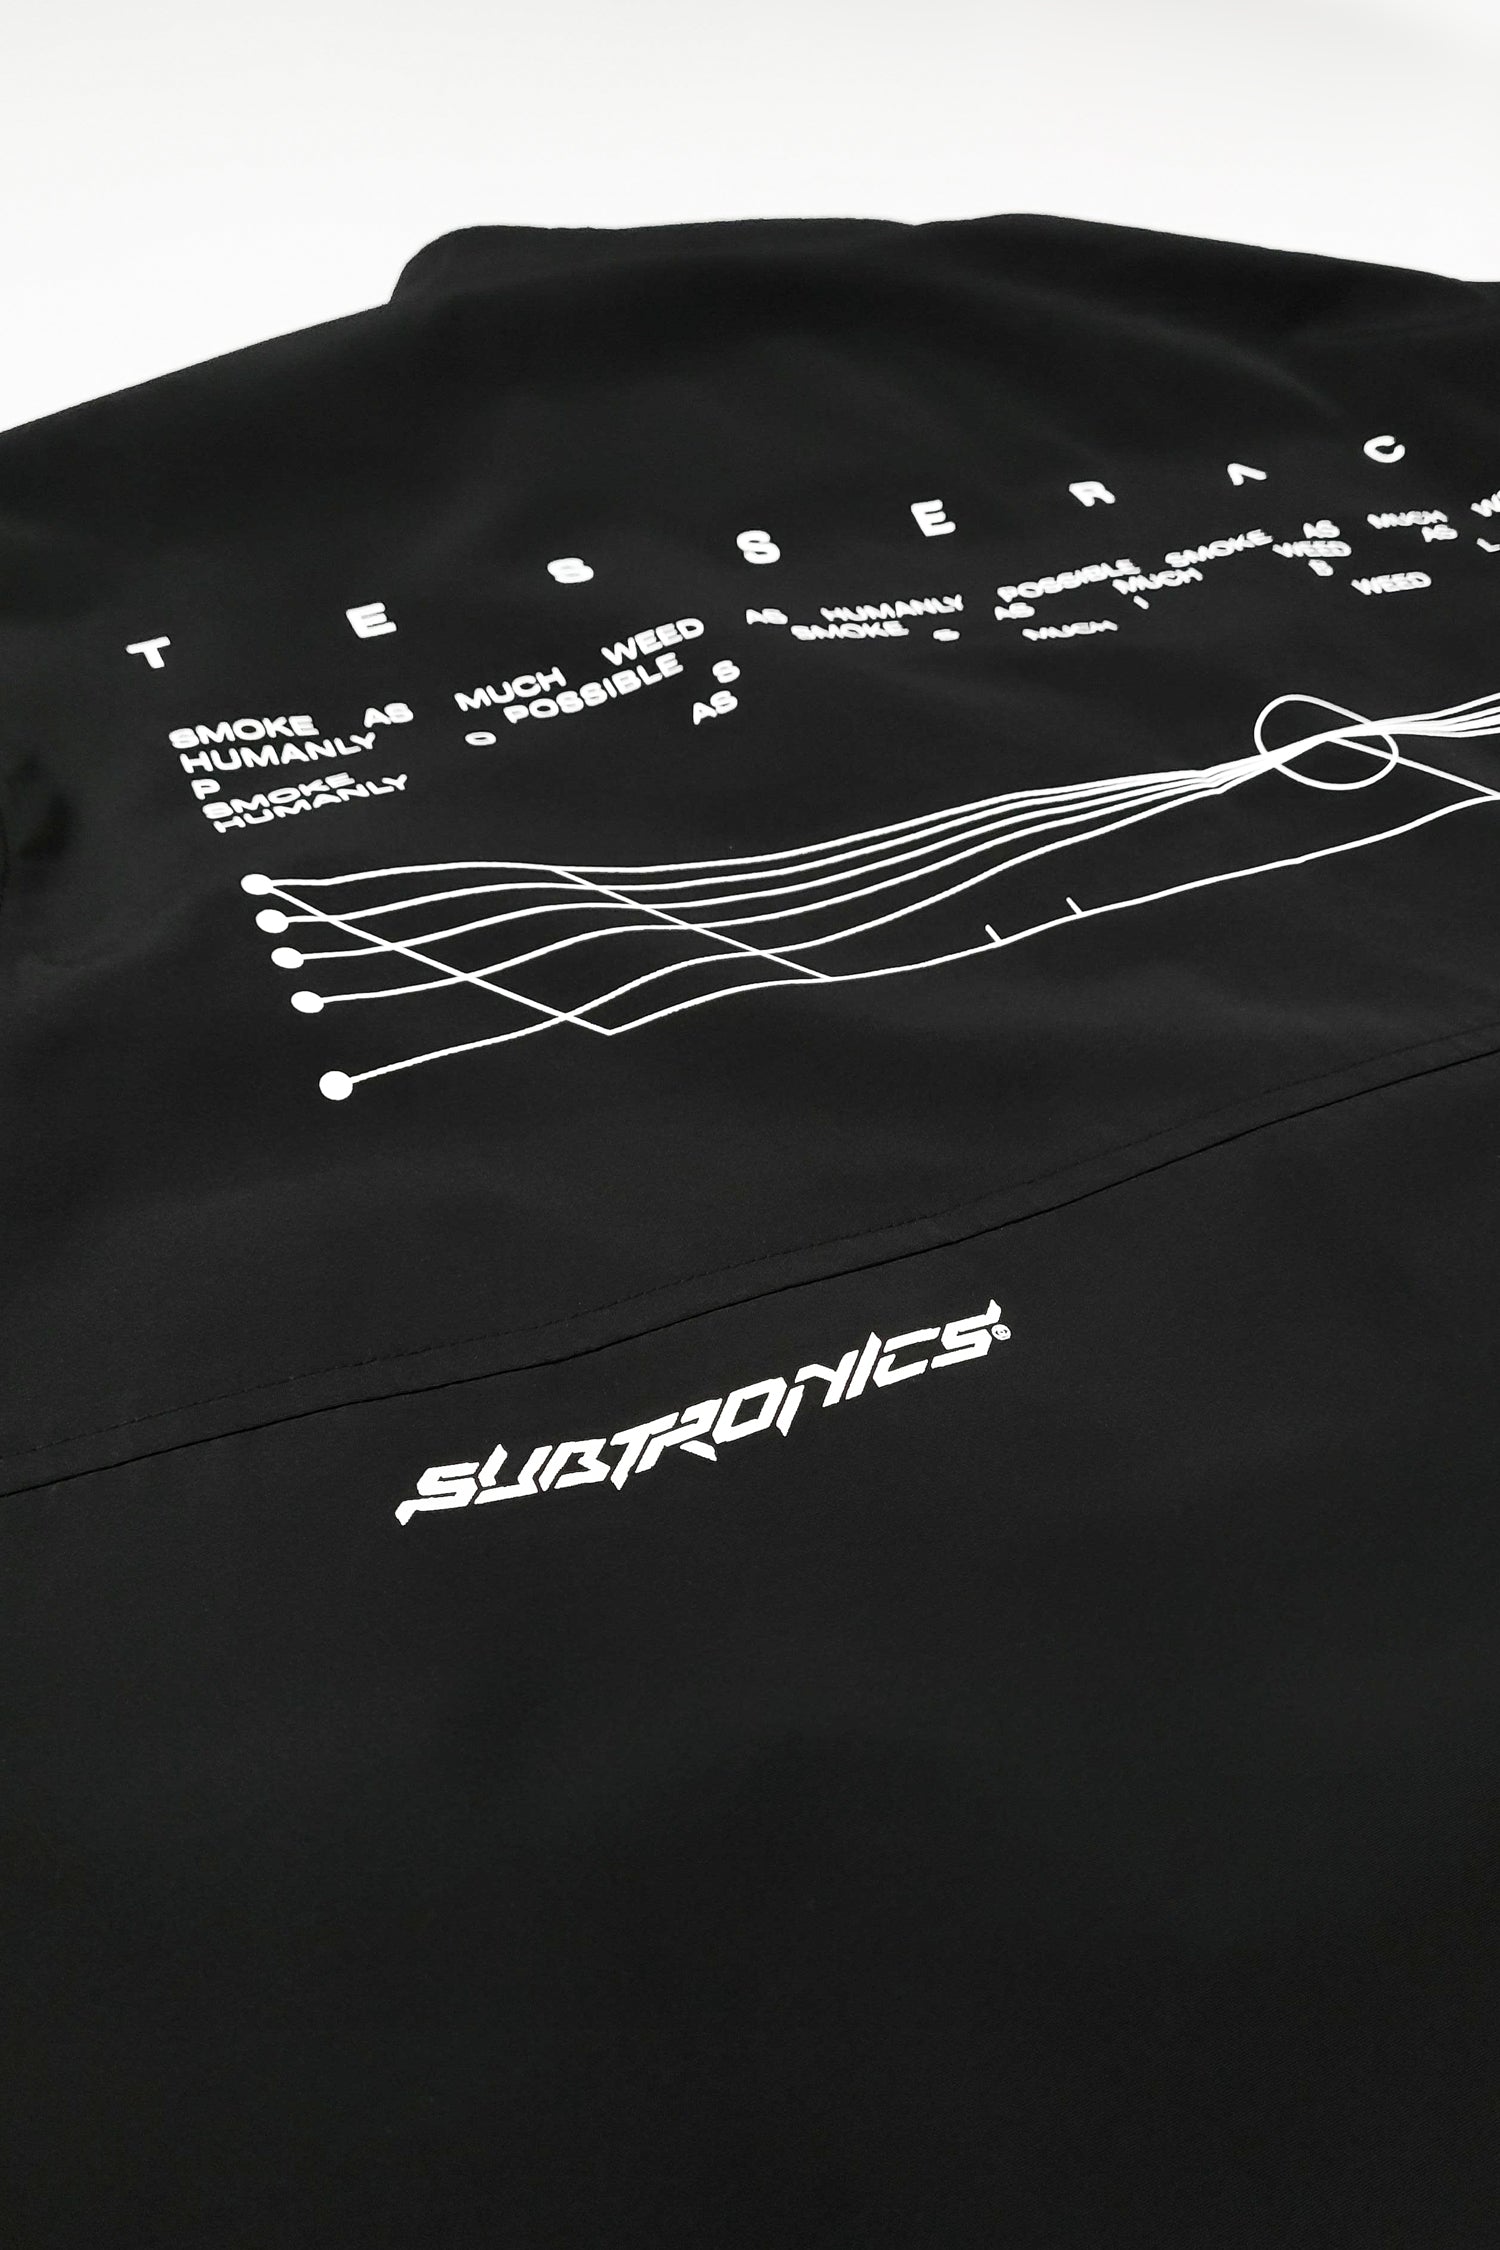 Subtronics Signature V2 Collection - Singularity Jacket